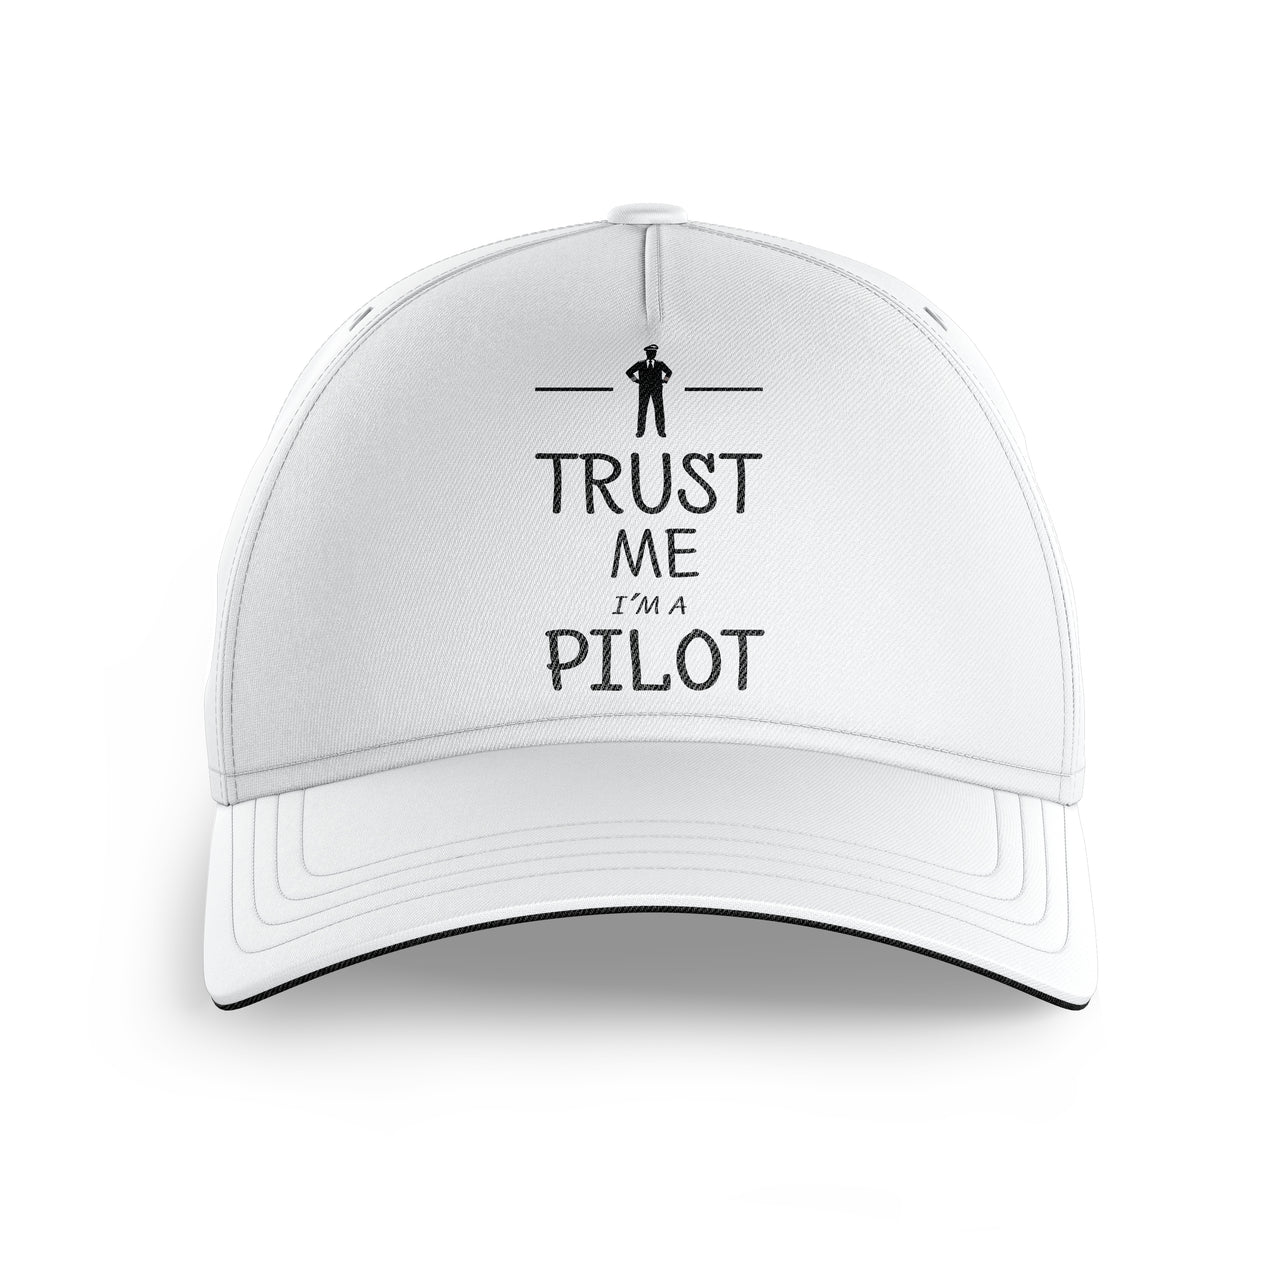 Trust Me I'm a Pilot Printed Hats